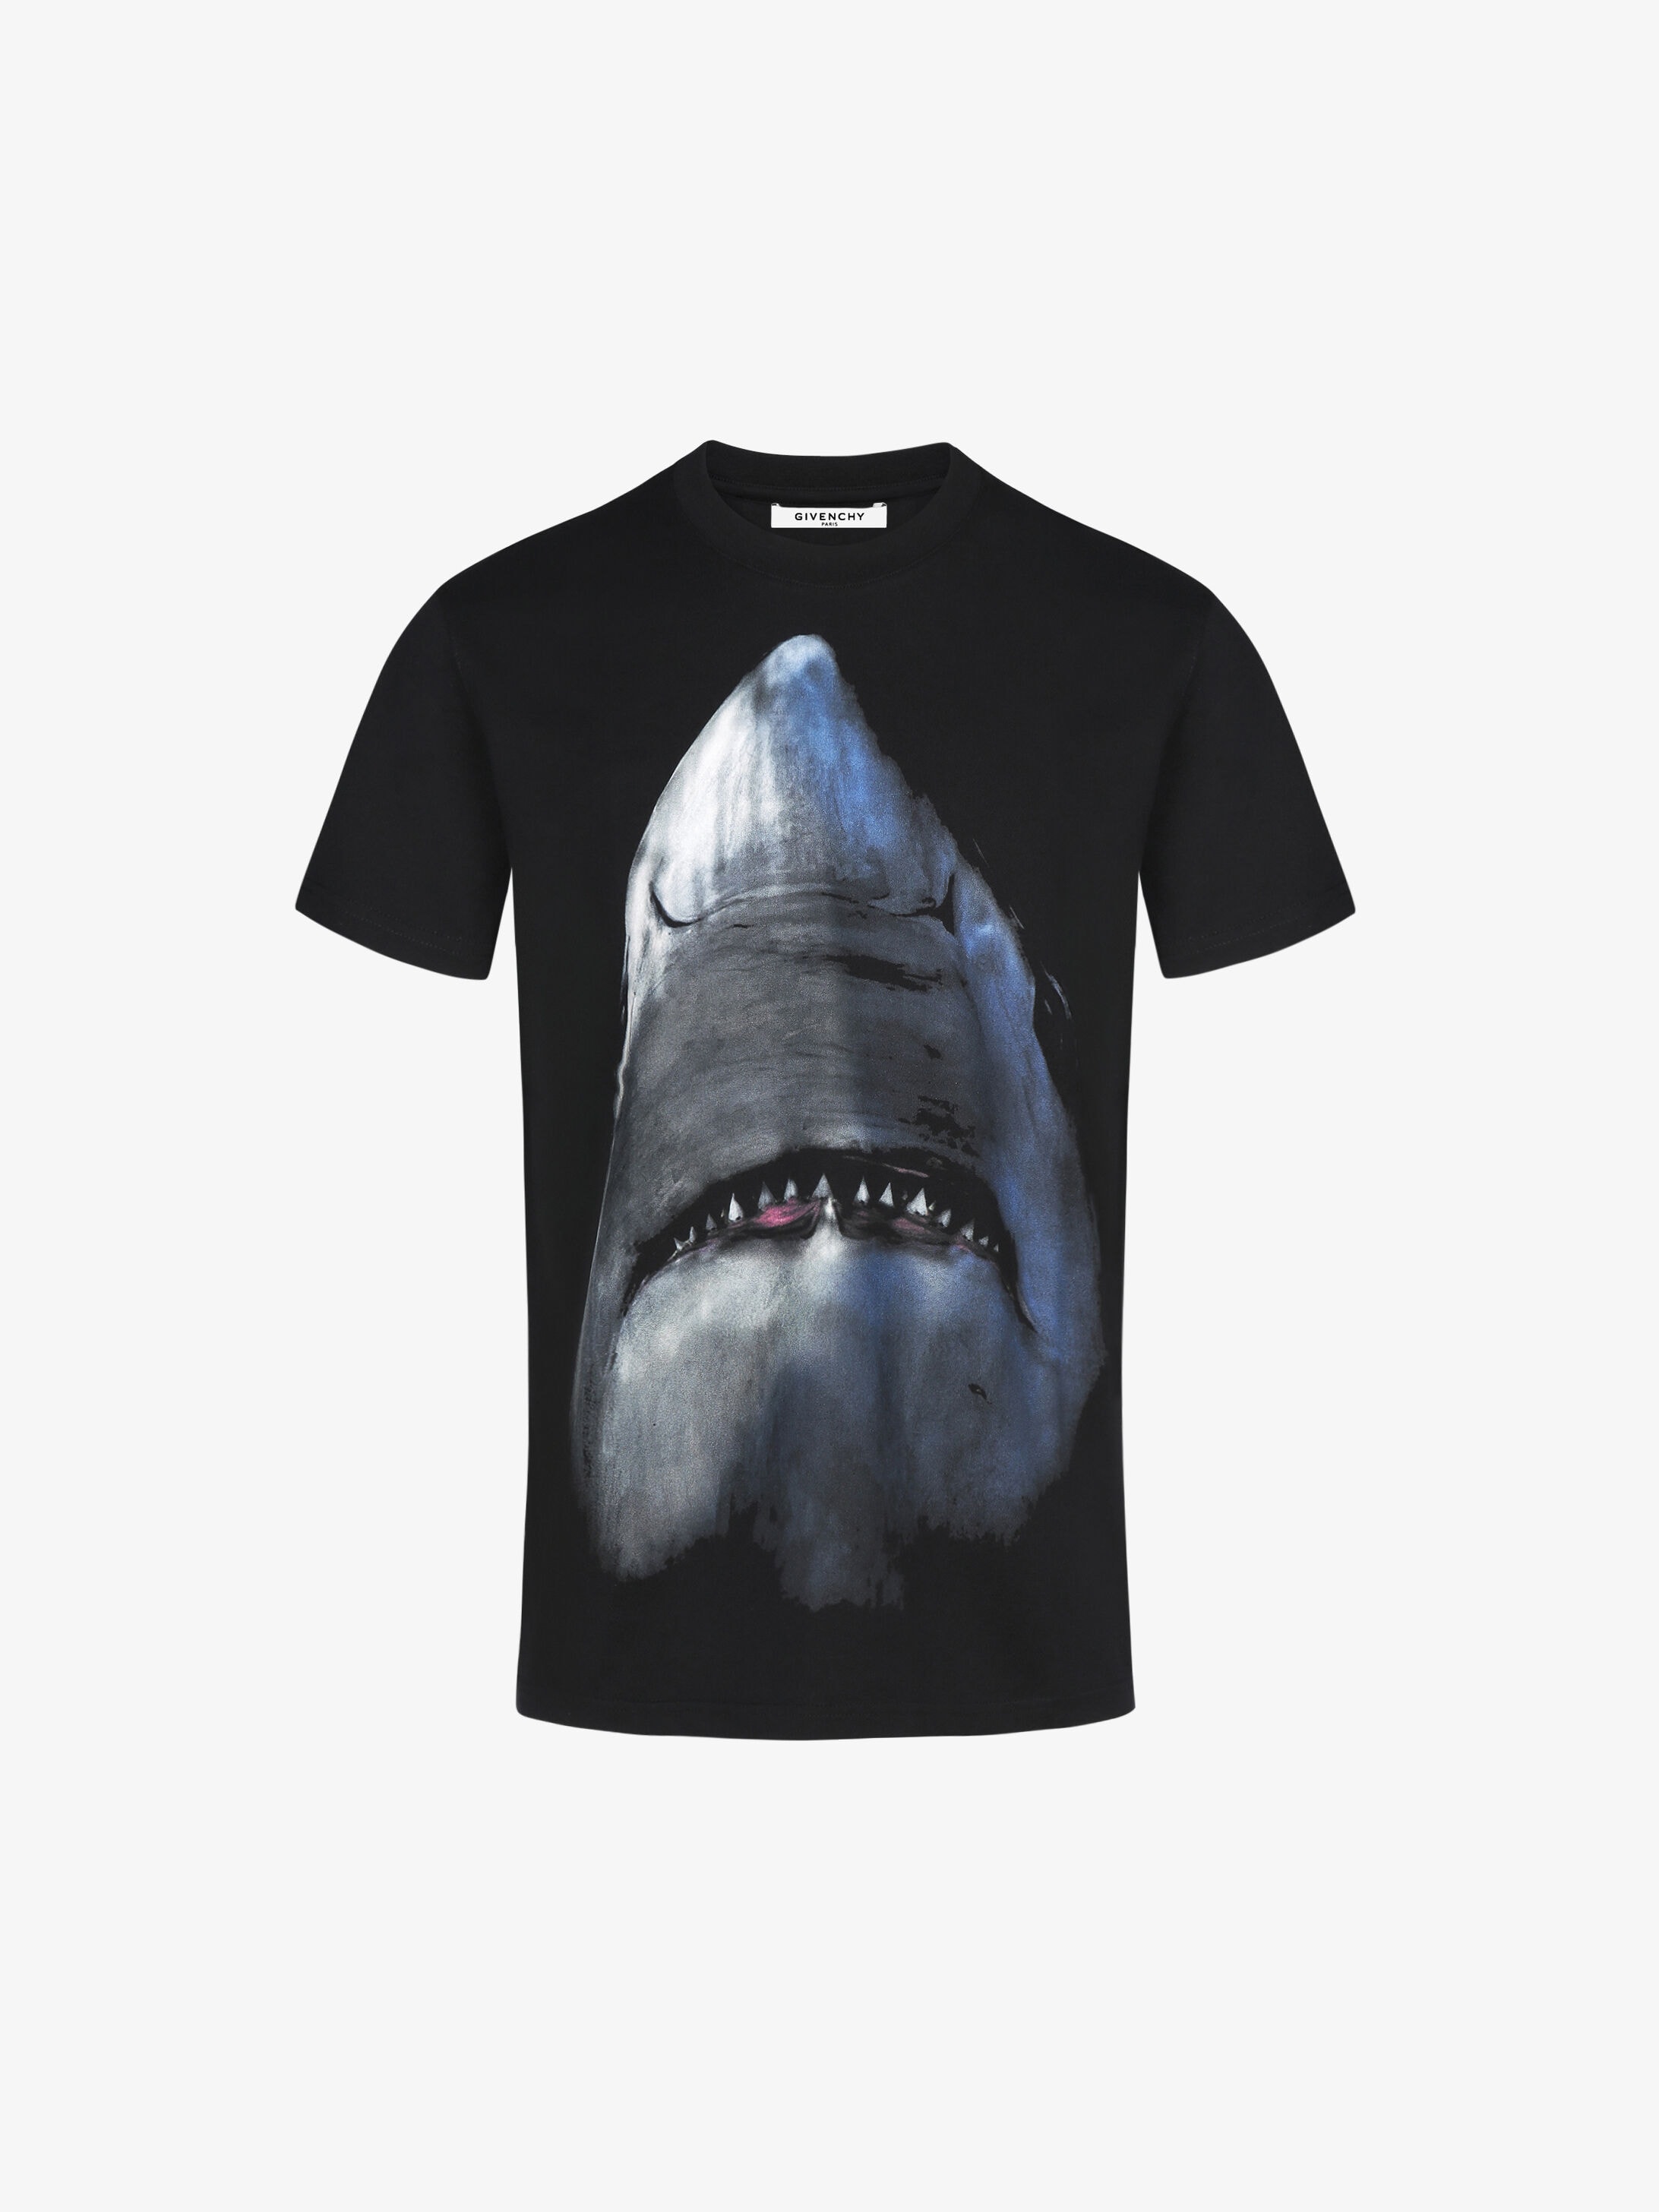 Givenchy Shark printed t-shirt 